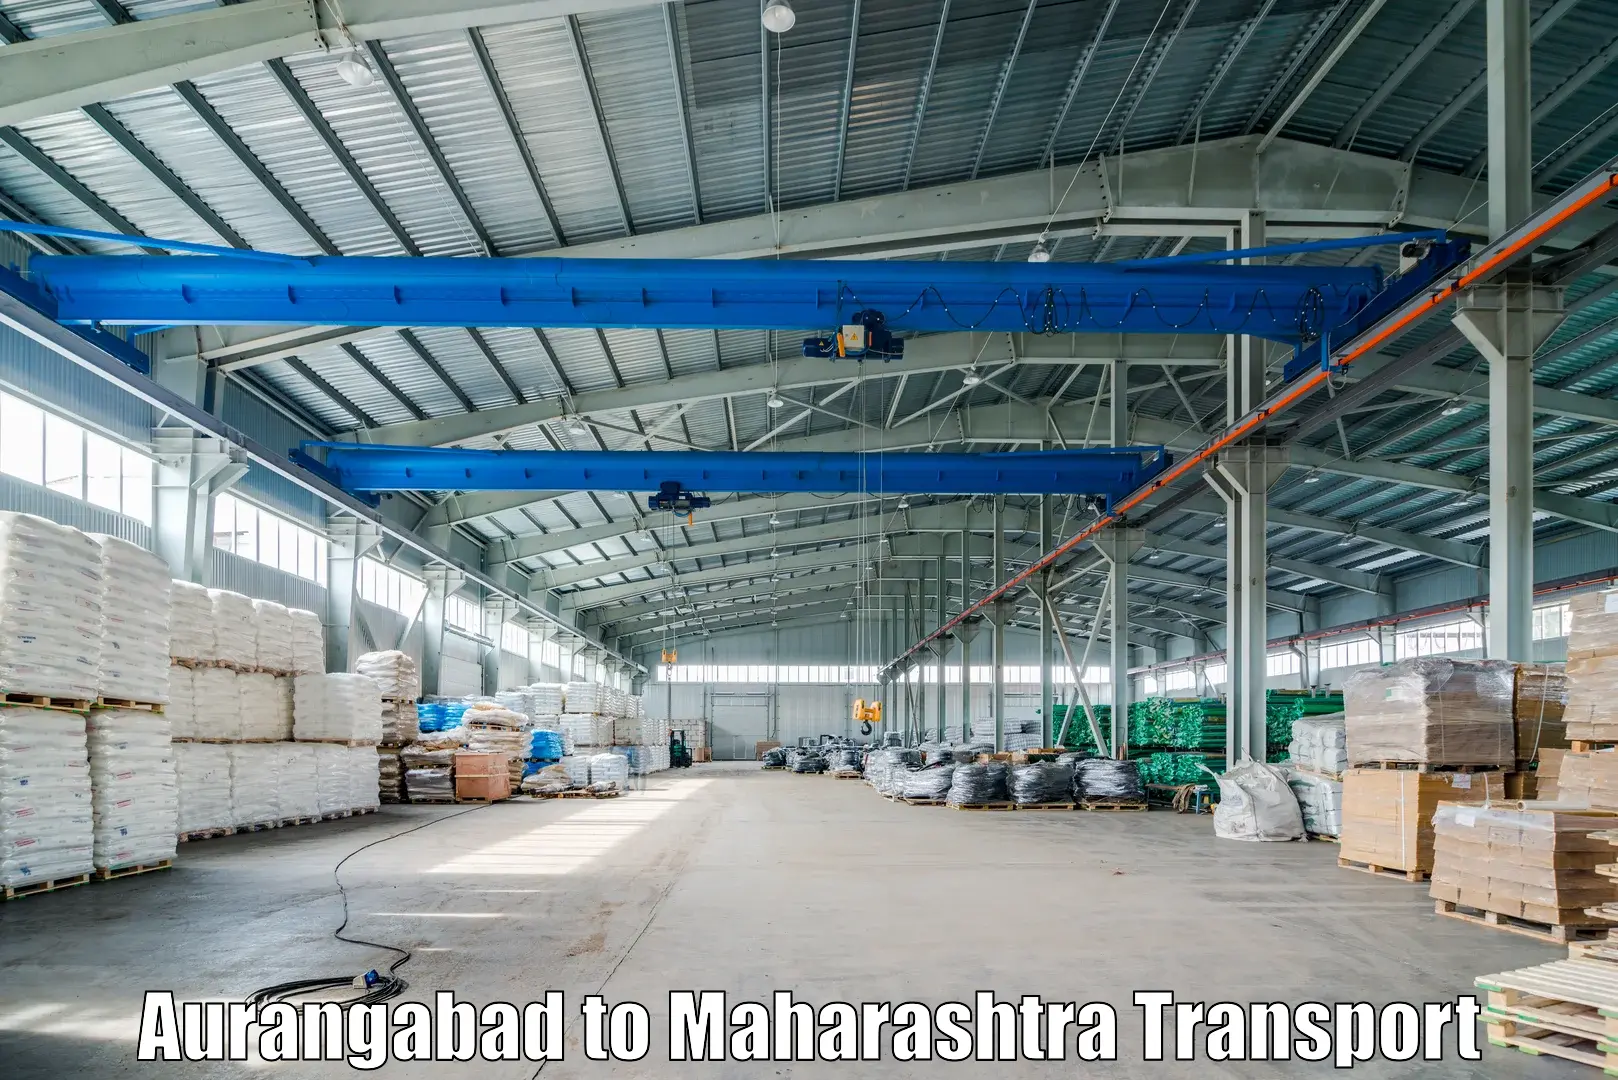 International cargo transportation services Aurangabad to Wagholi